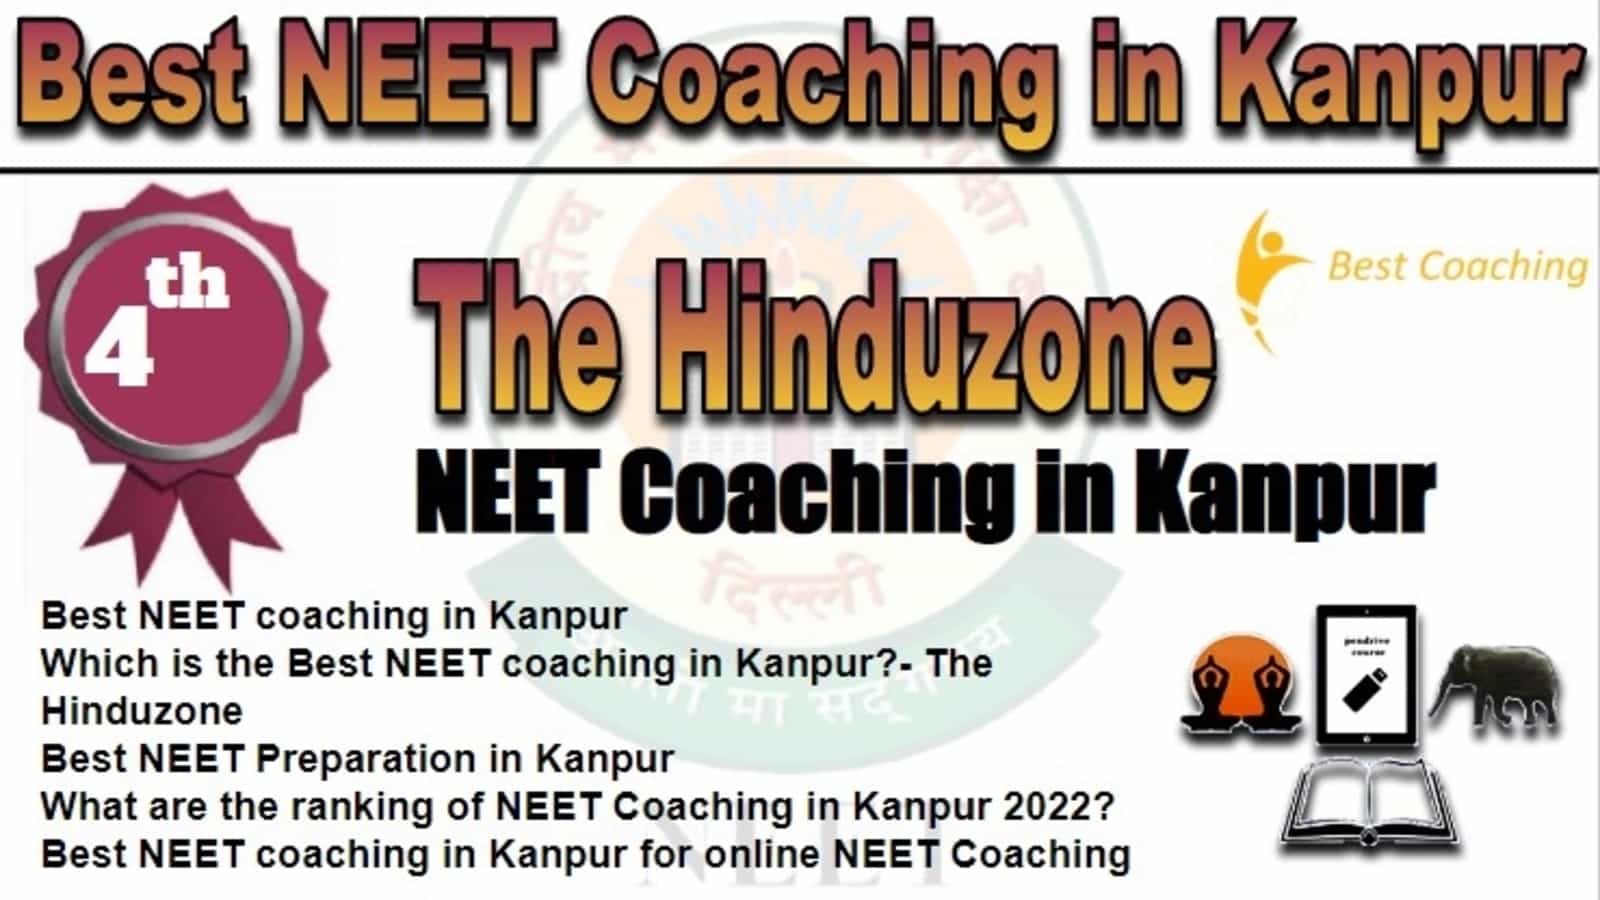 Rank 4 Best NEET Coaching In Kanpur